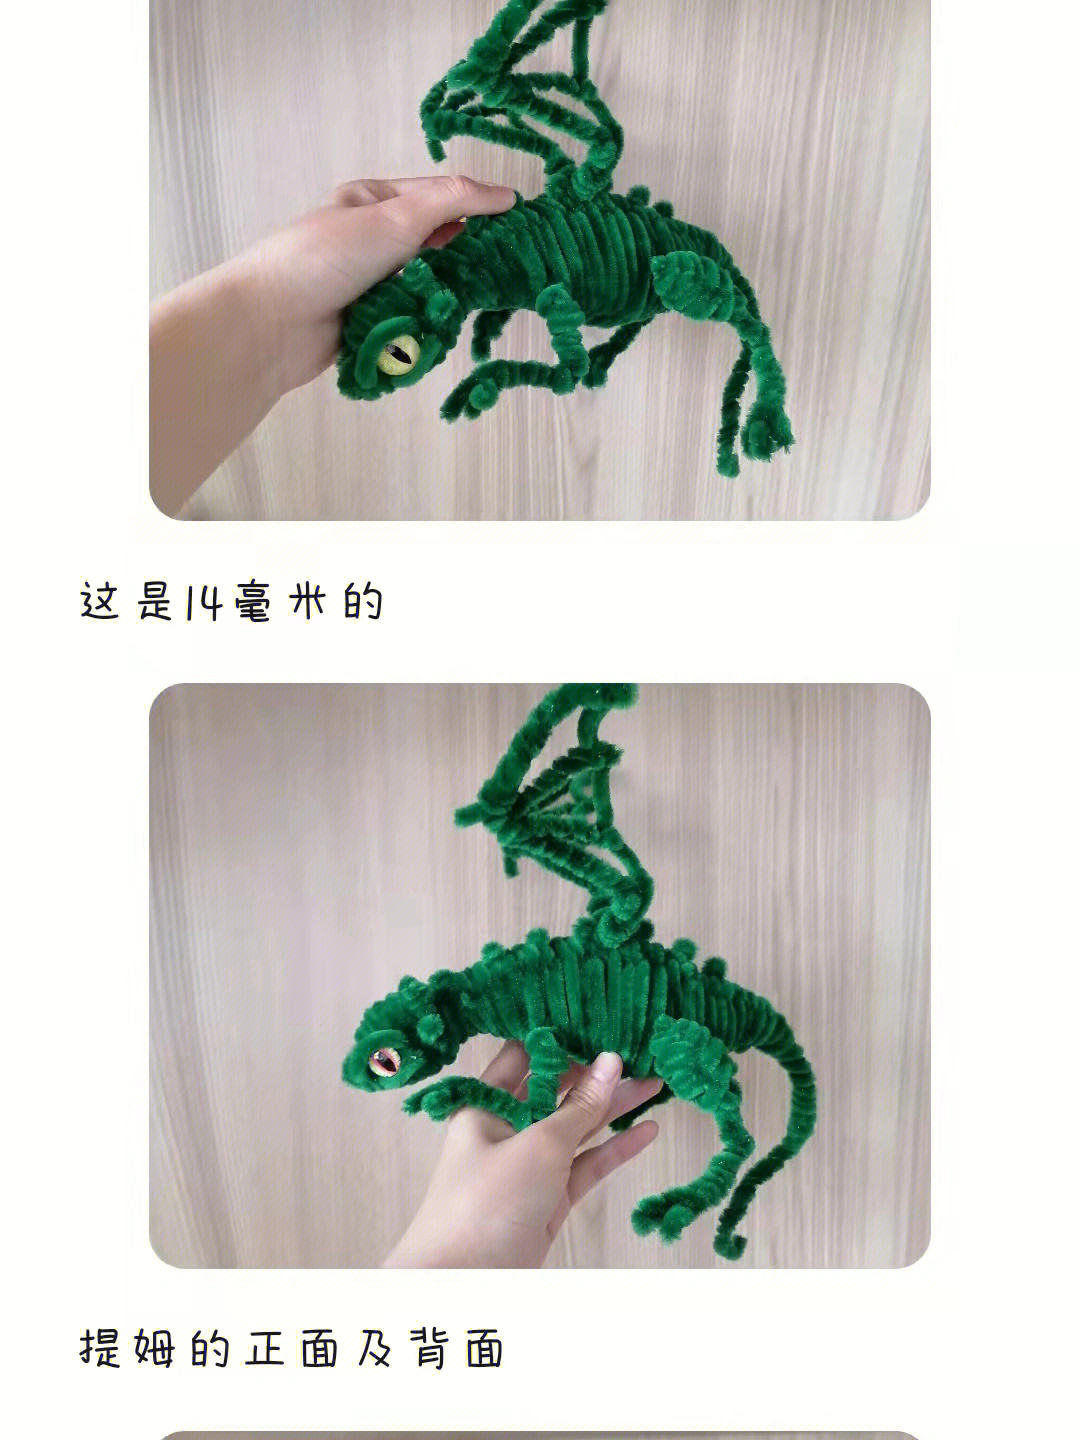 扭扭棒diy恐龙制作过程图片